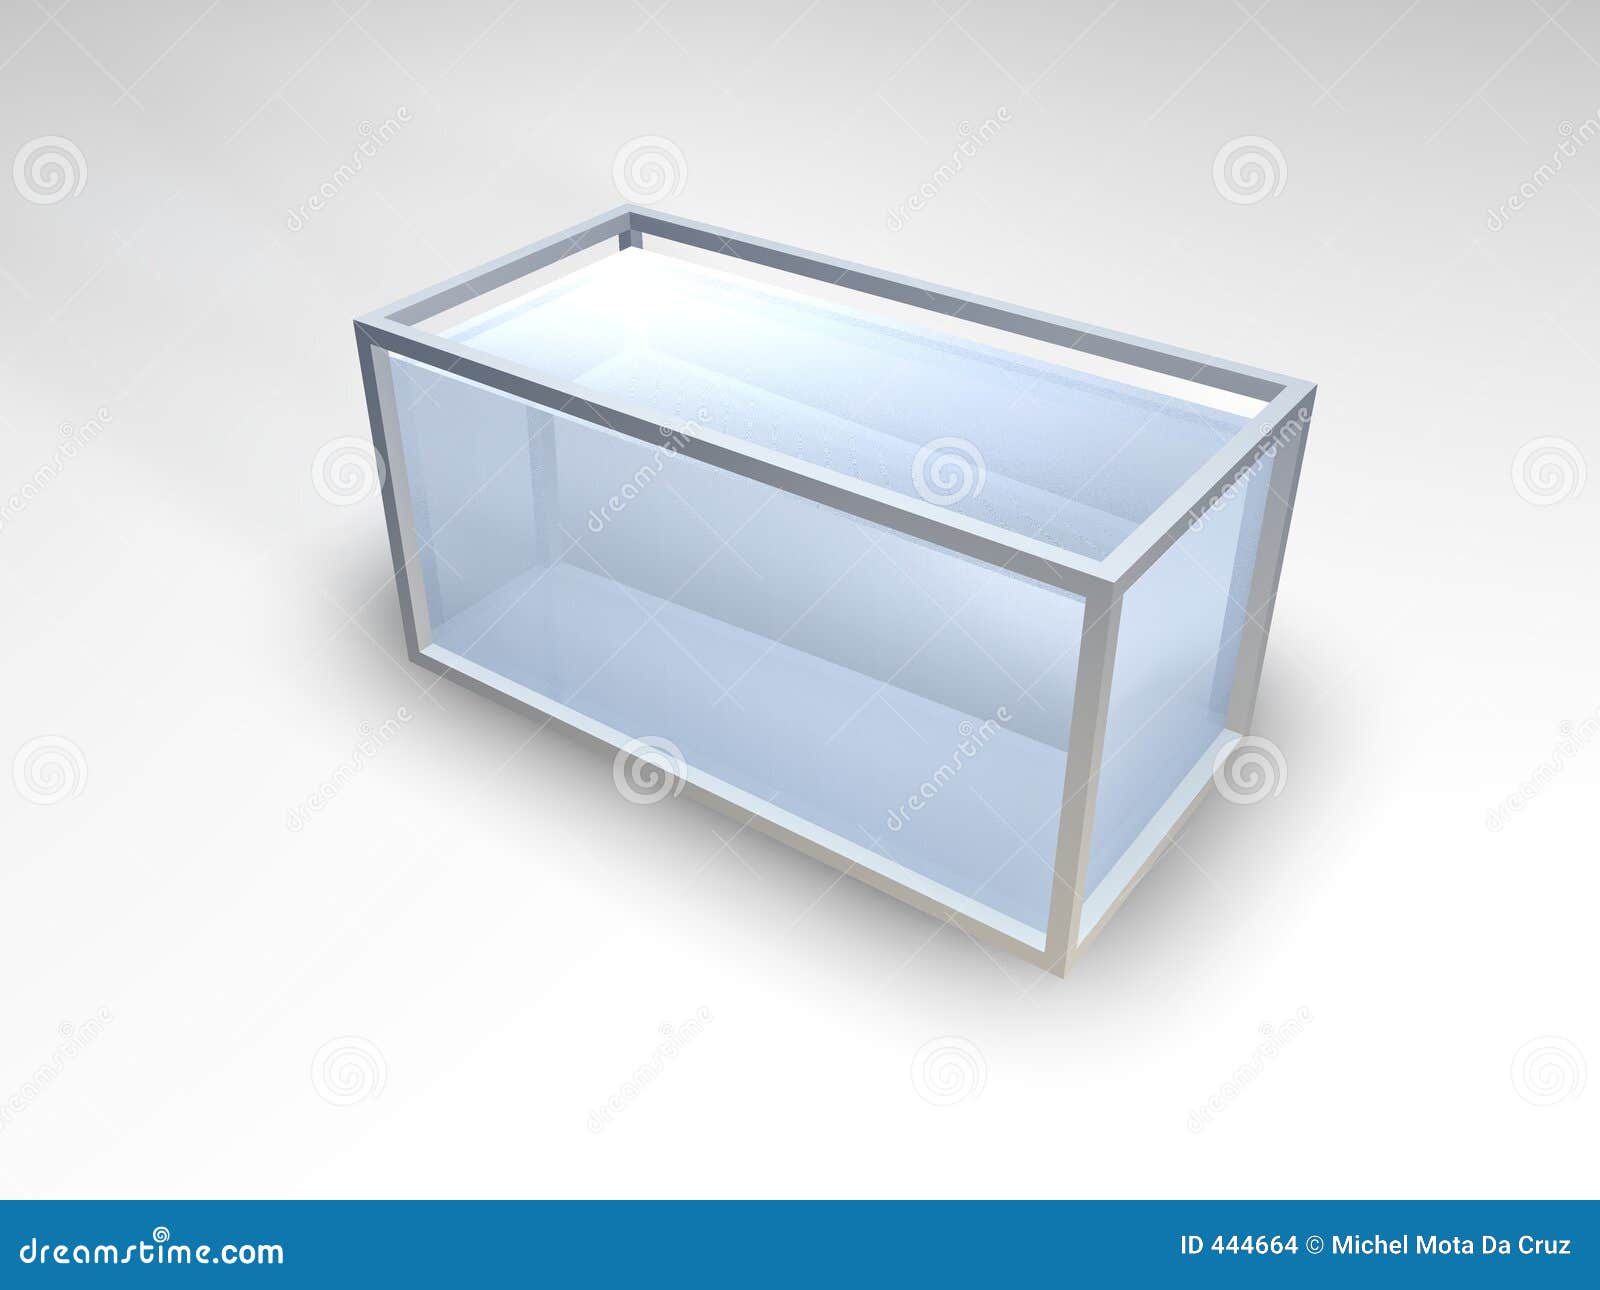 Leeg aquarium stock illustratie. Illustration of schaduw -